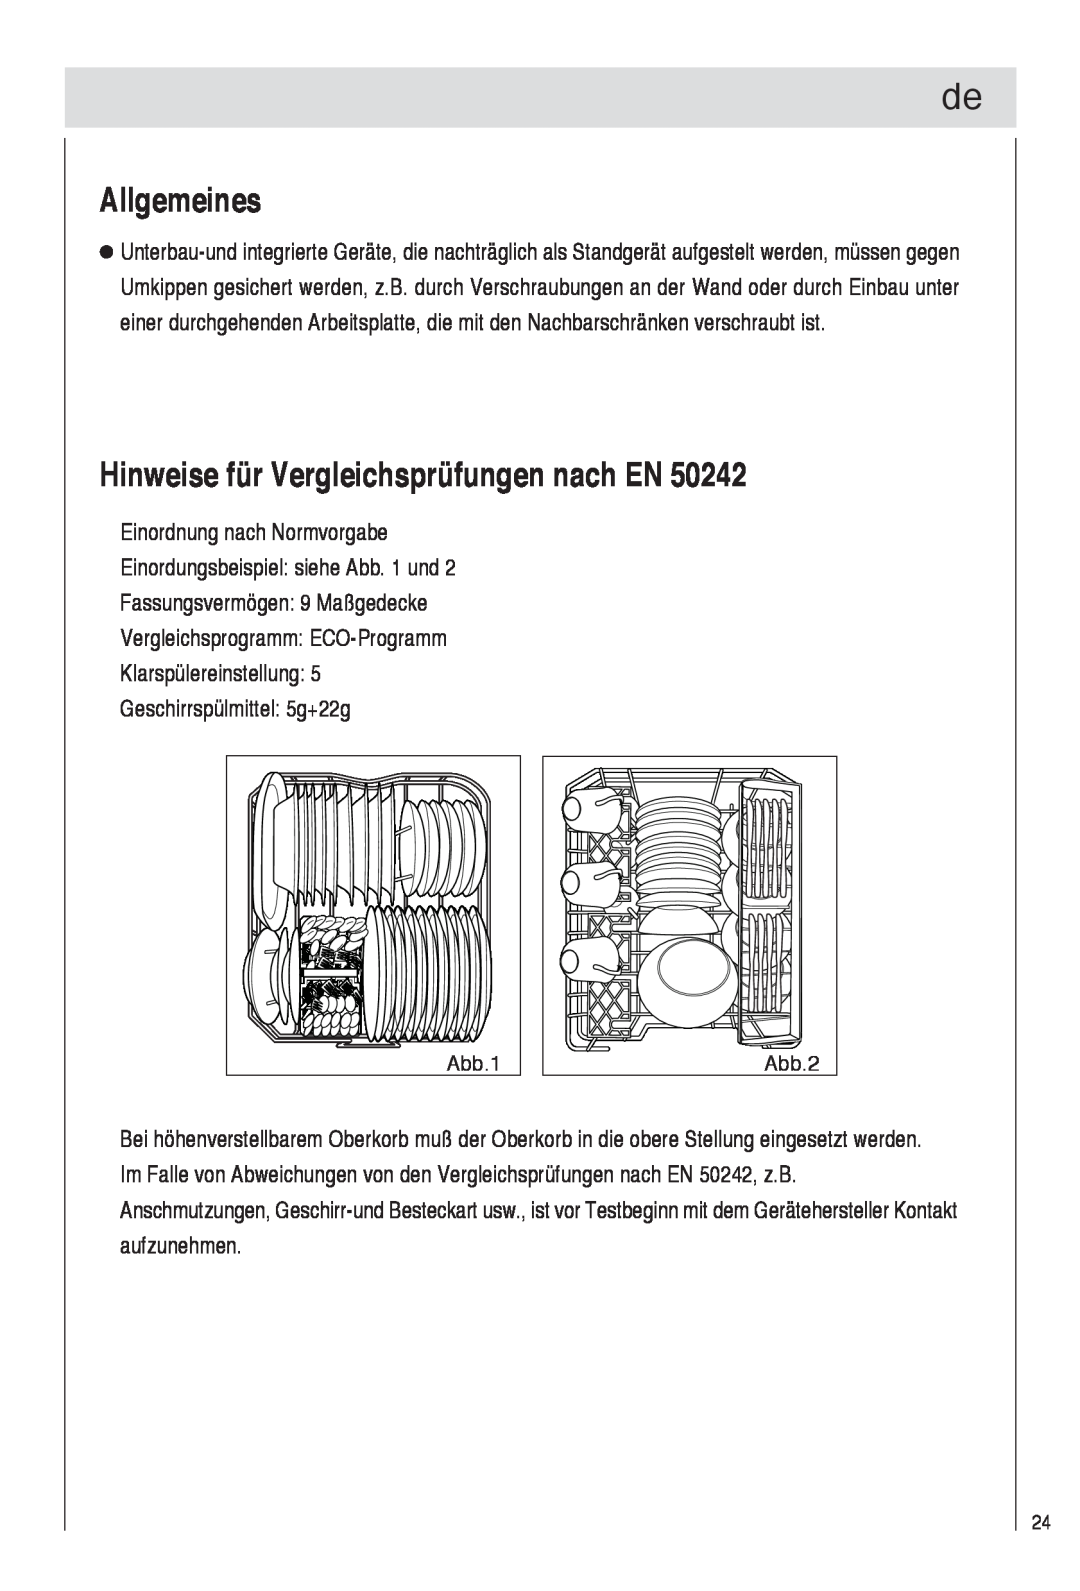 Haier DW9-TFE1 operation manual Allgemeines, Hinweise für Vergleichsprüfungen nach EN, Abb.1, Abb.2 